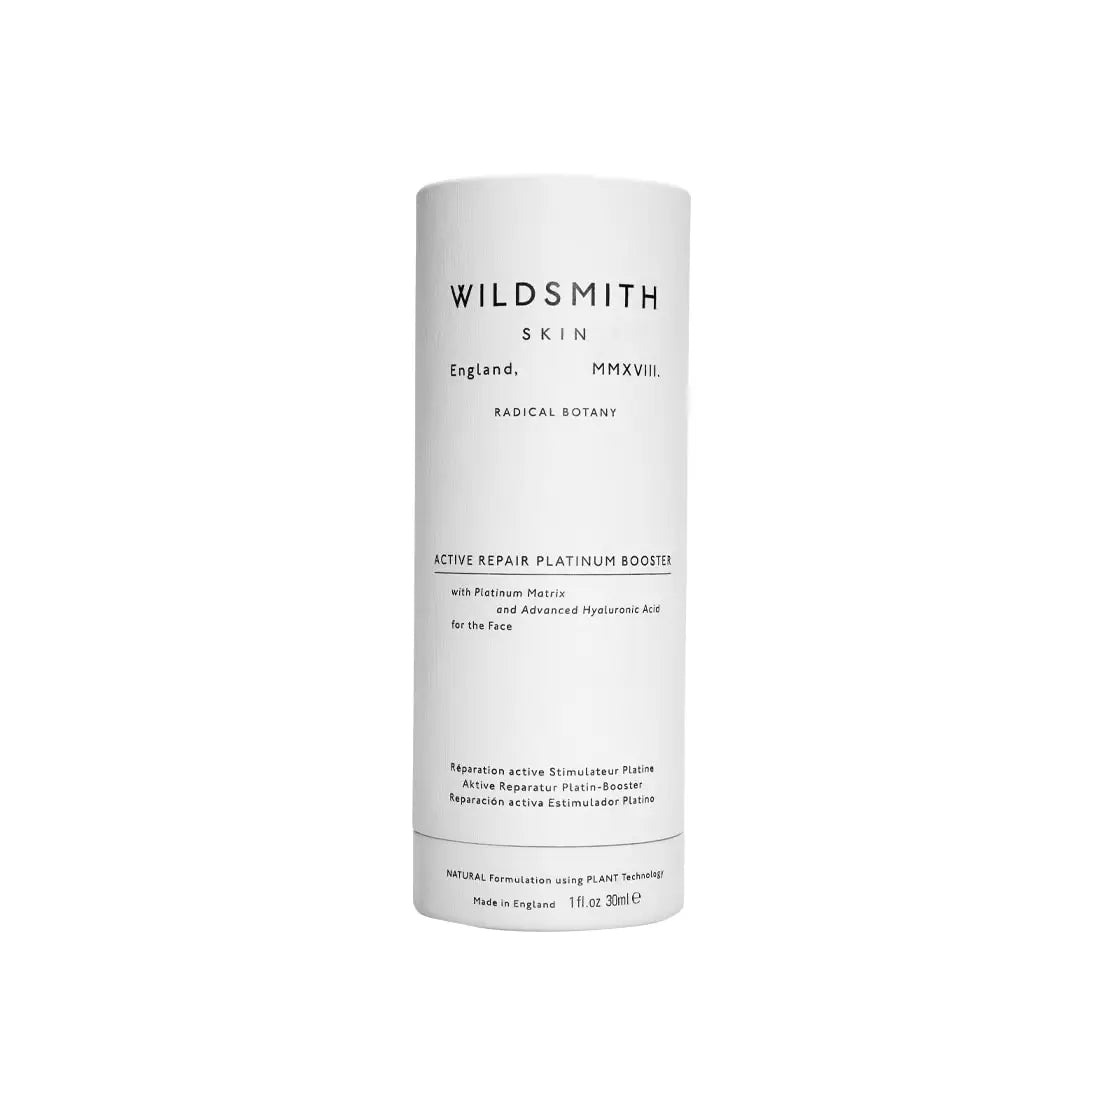 Wildsmith Skin Active Repair Platinum Booster 30ml - Free 